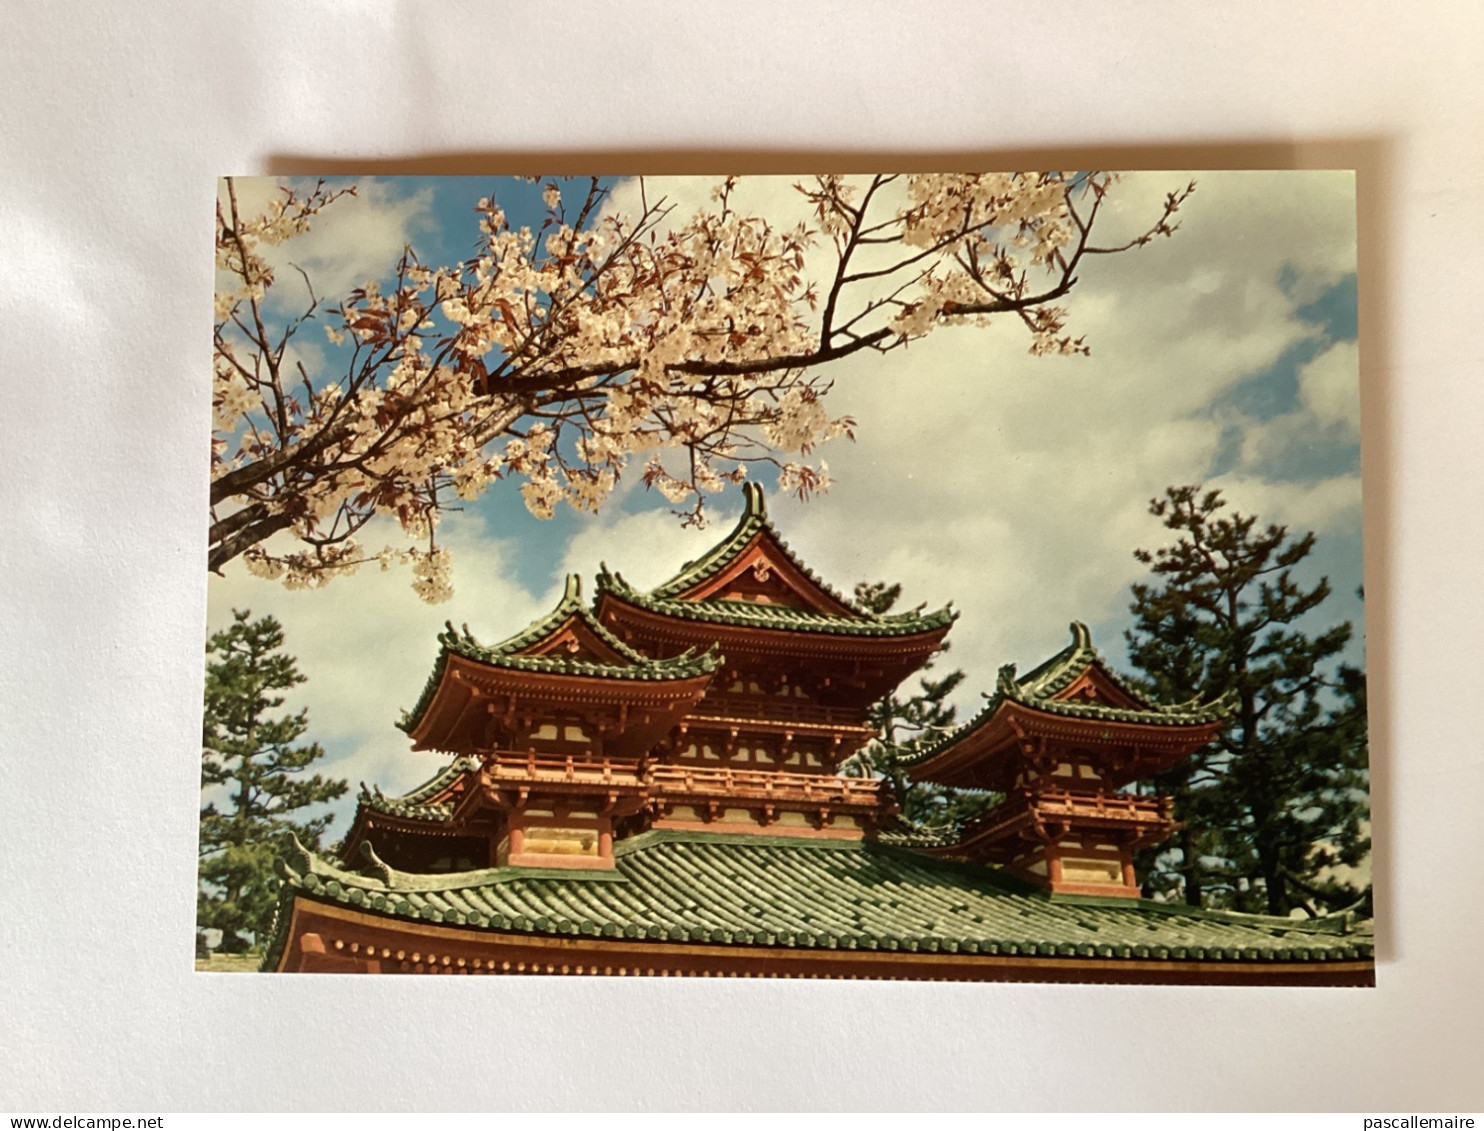 8 cartes postales Kyoto année 1960